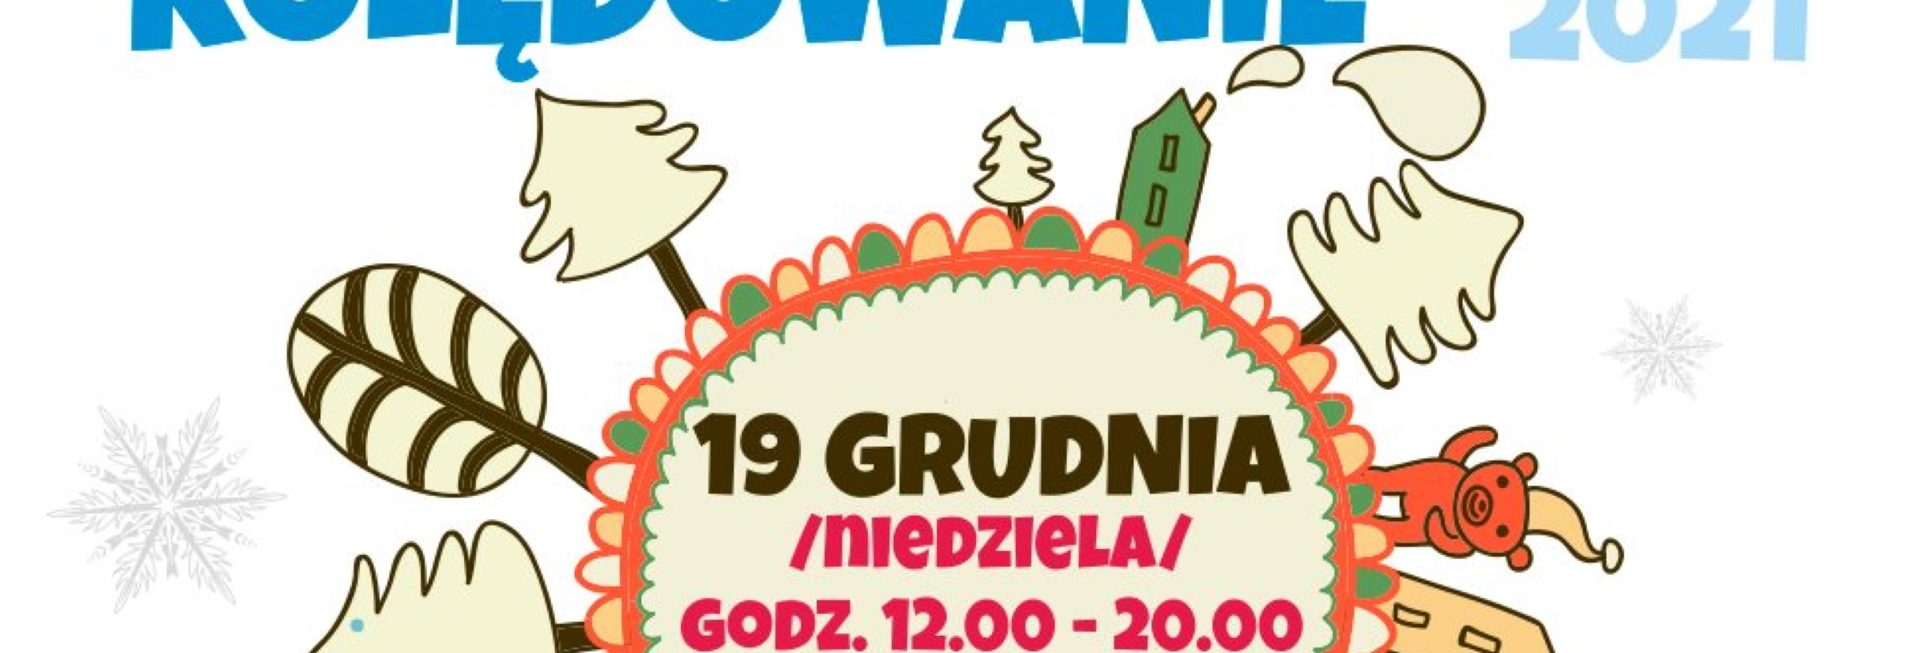 Plakat graficzny zapraszający do Barczewa na Barczewskie Kolędowanie - Barczewo 2021.  